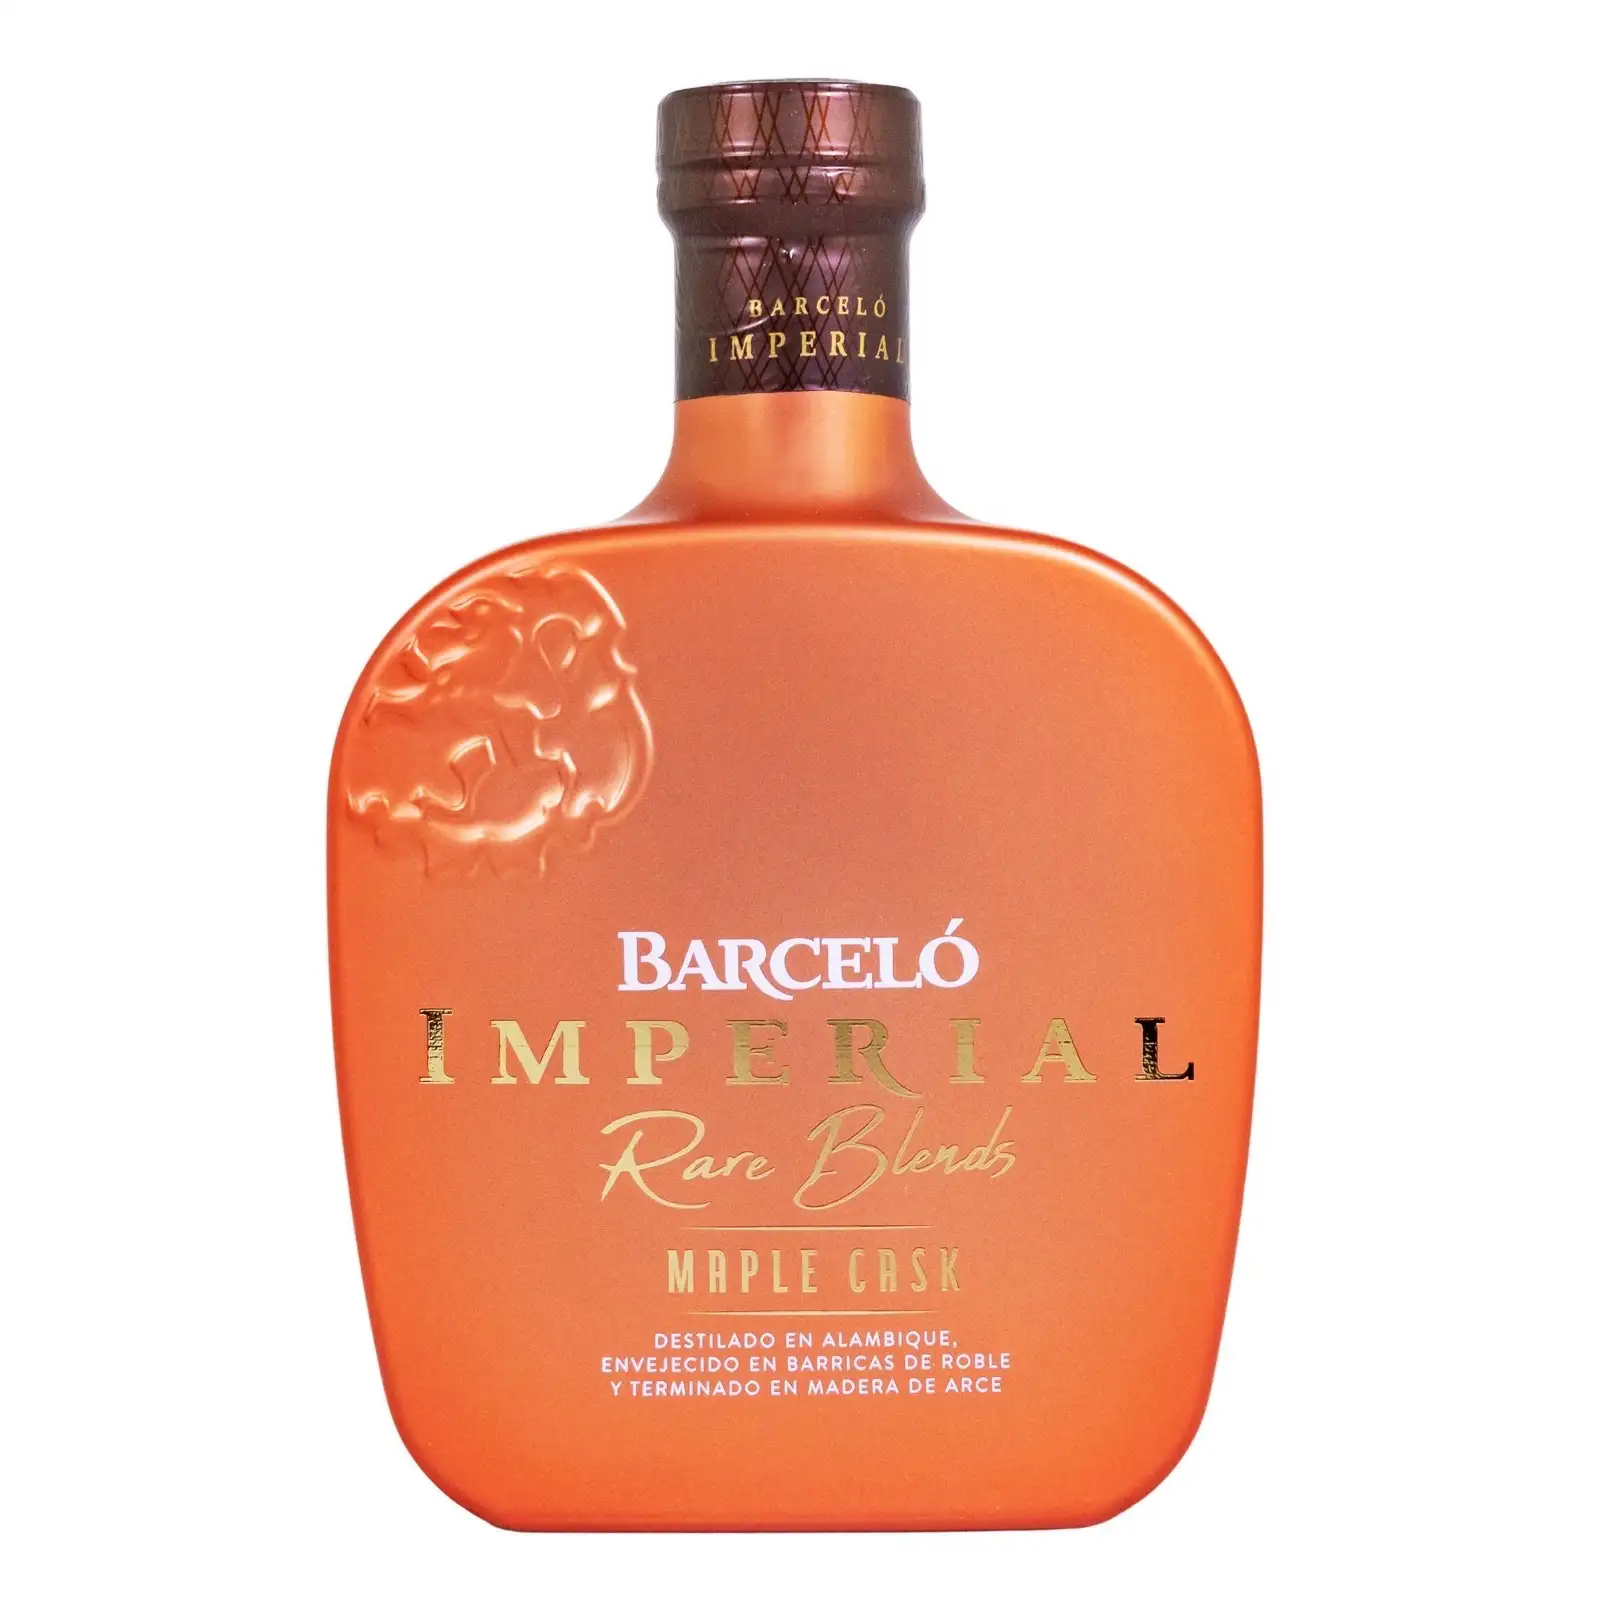 Barceló Imperial Ron Dominicano 38% vol. 0,7l in Giftbox con 2 bicchieri